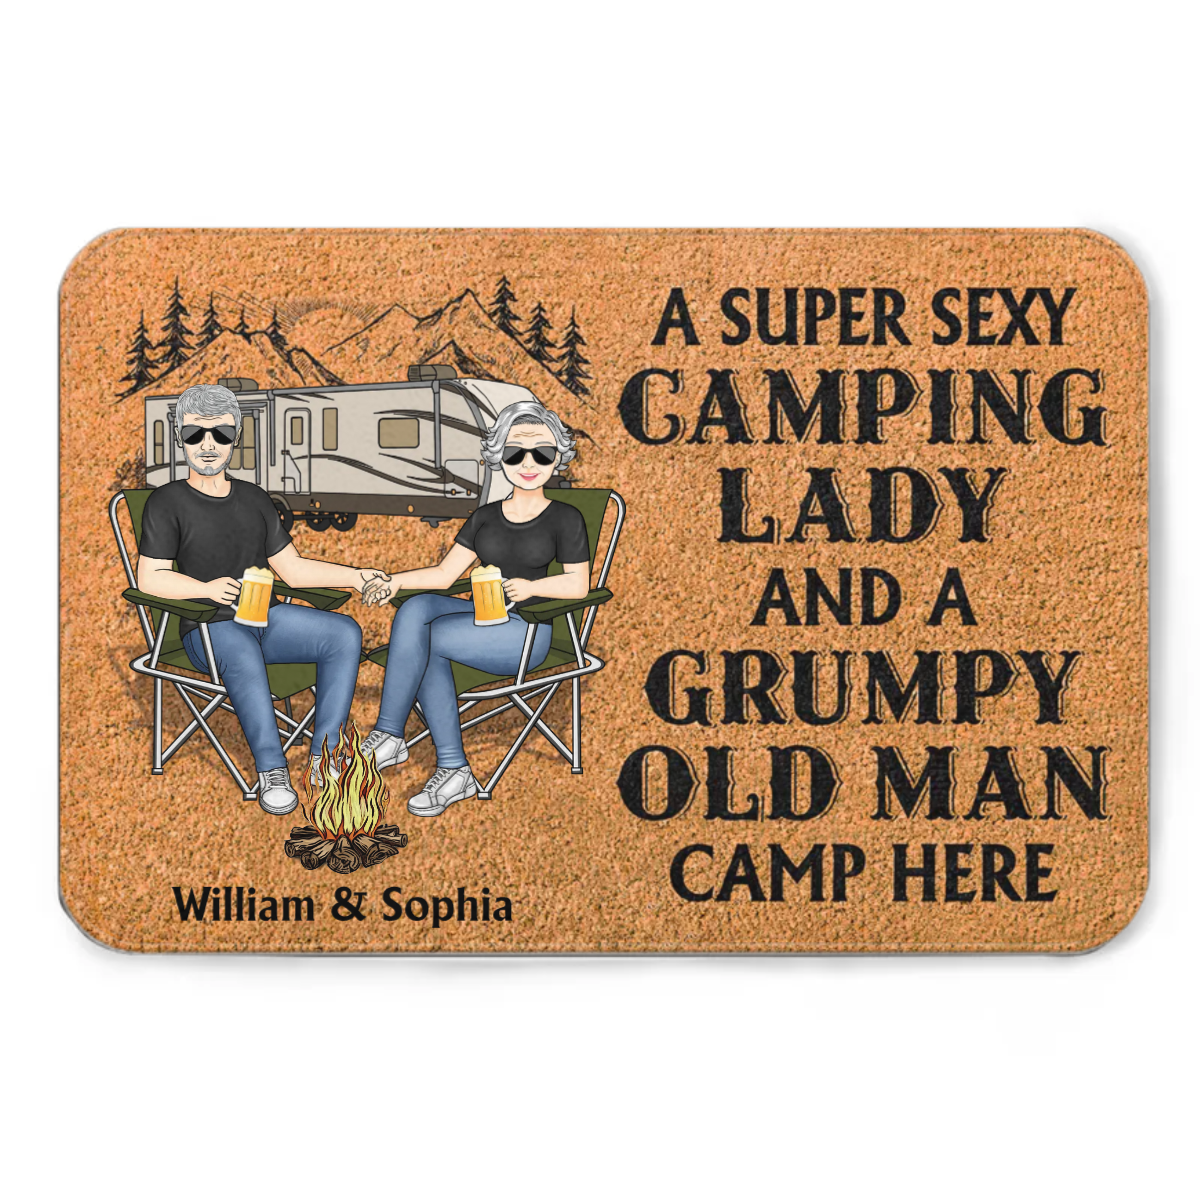 キャンプ カップル 超セクシーなキャンプ レディーと不機嫌そうな老人がここでキャンプ - カップル ギフト - パーソナライズされたカスタム ドアマット